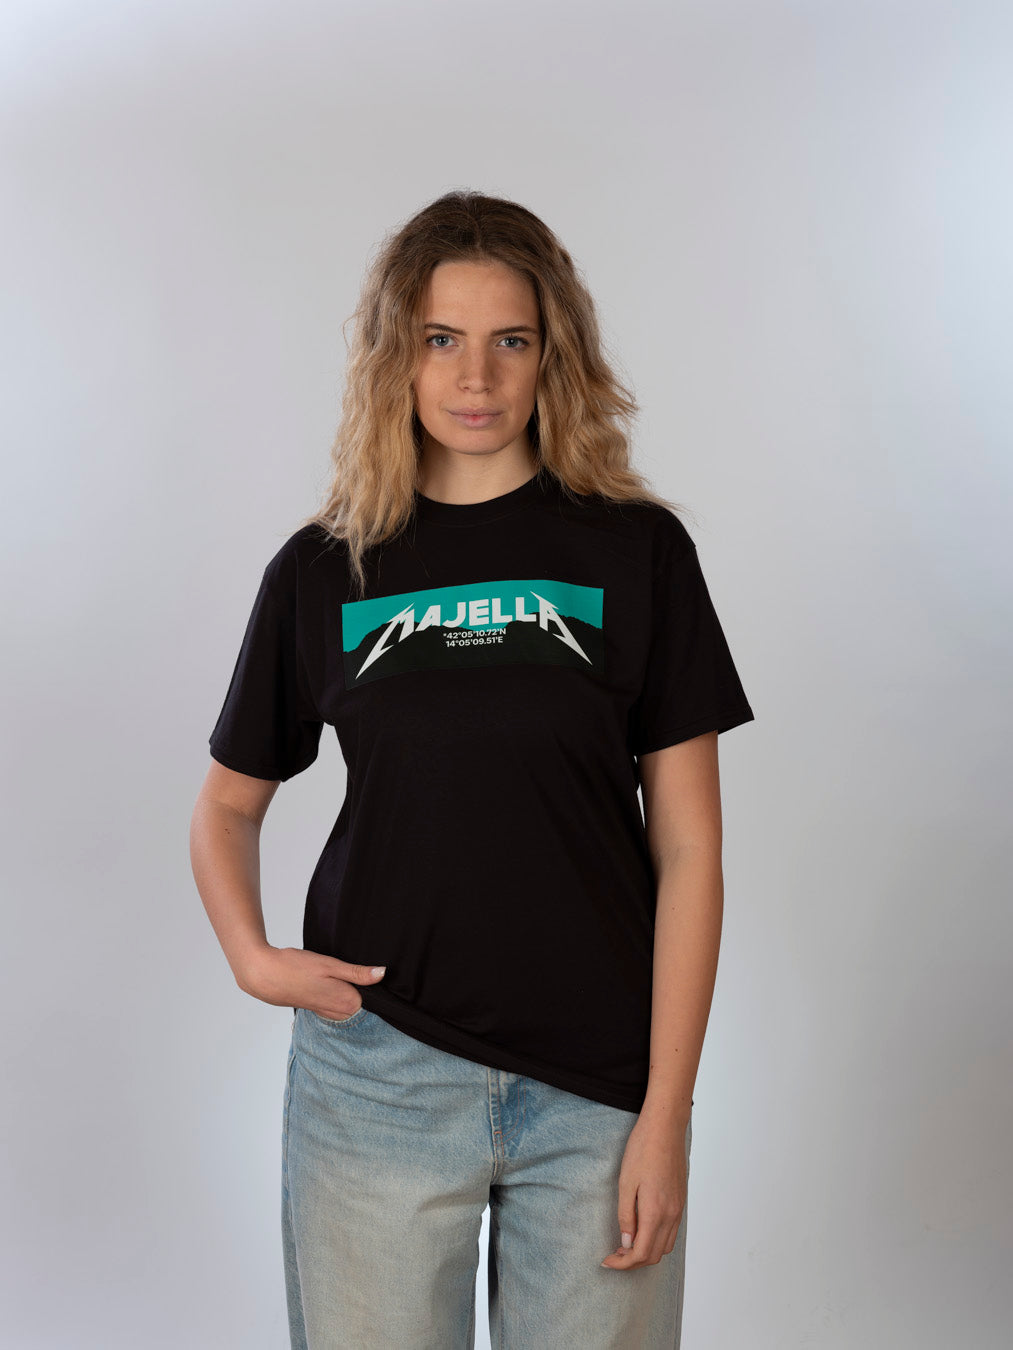 T-shirt Unisex - MAJELLA